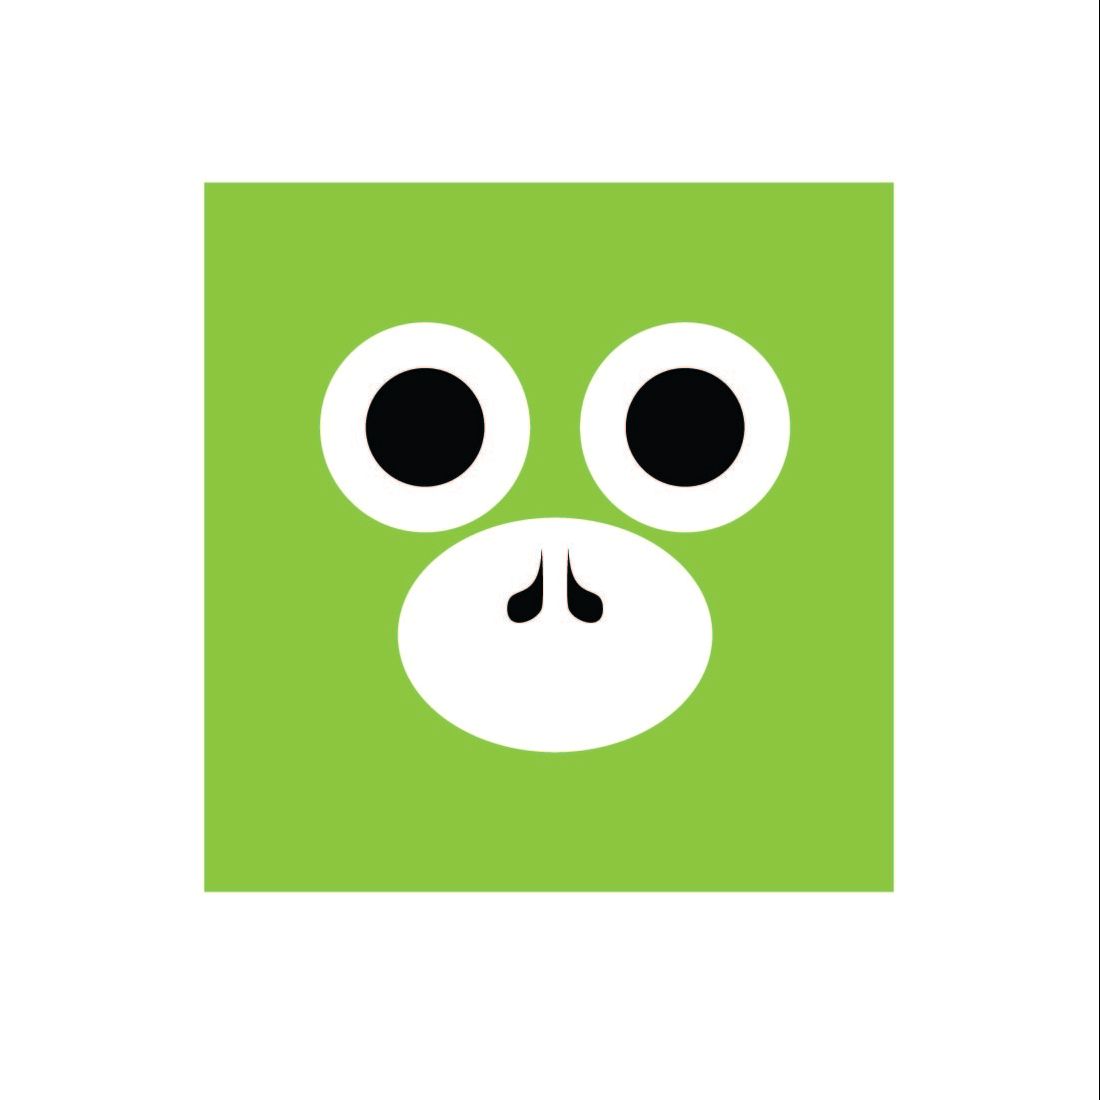 monky squre logo 1